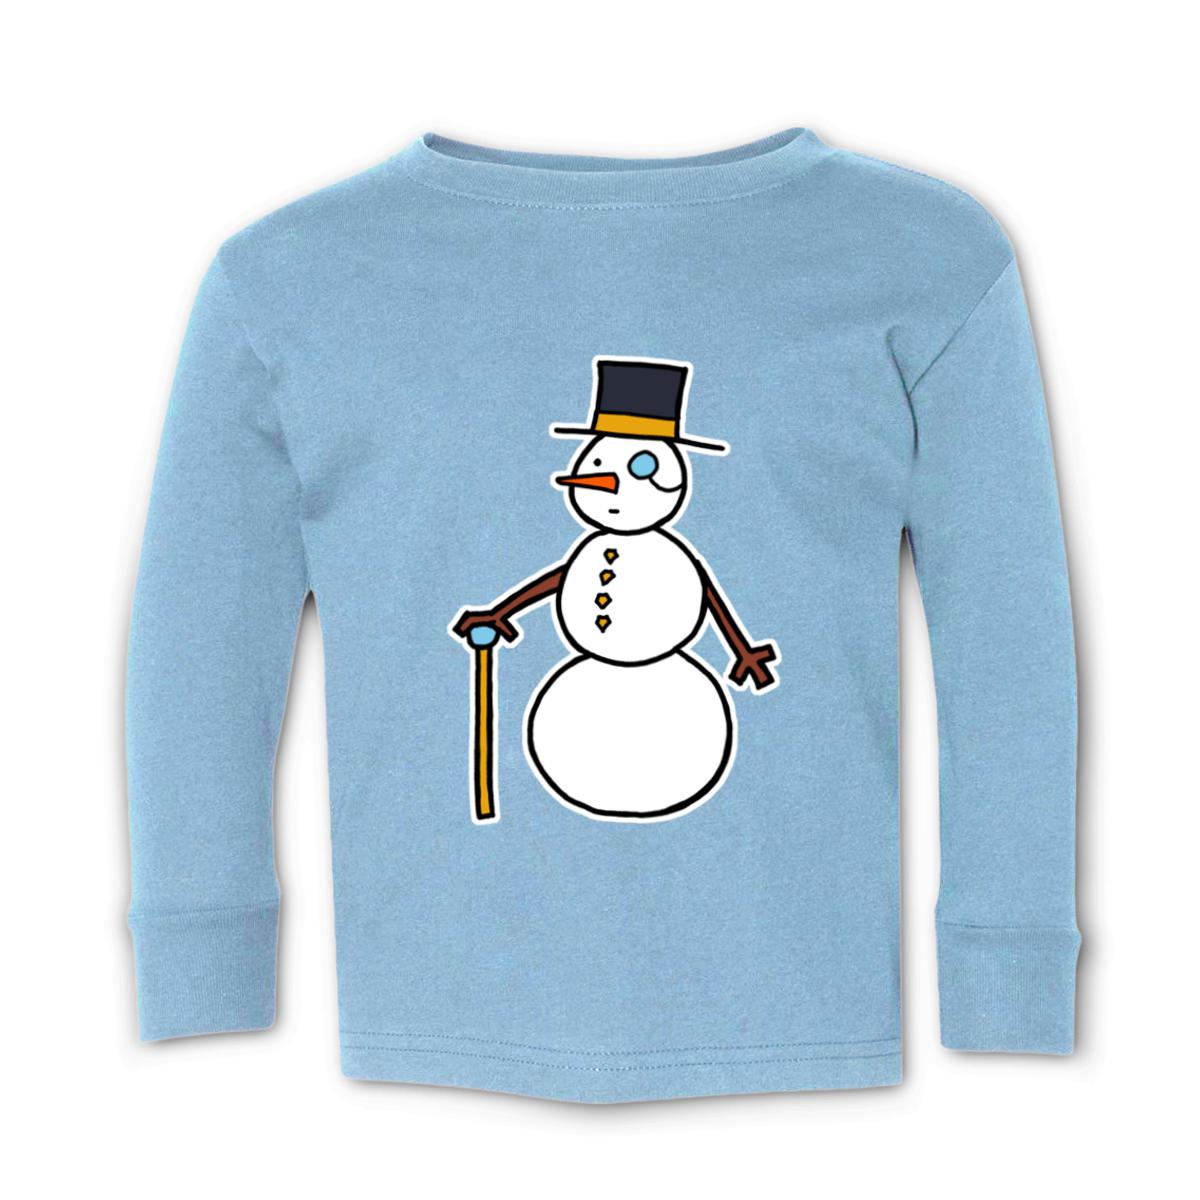 Dapper Snowman Kid's Long Sleeve Tee Medium light-blue